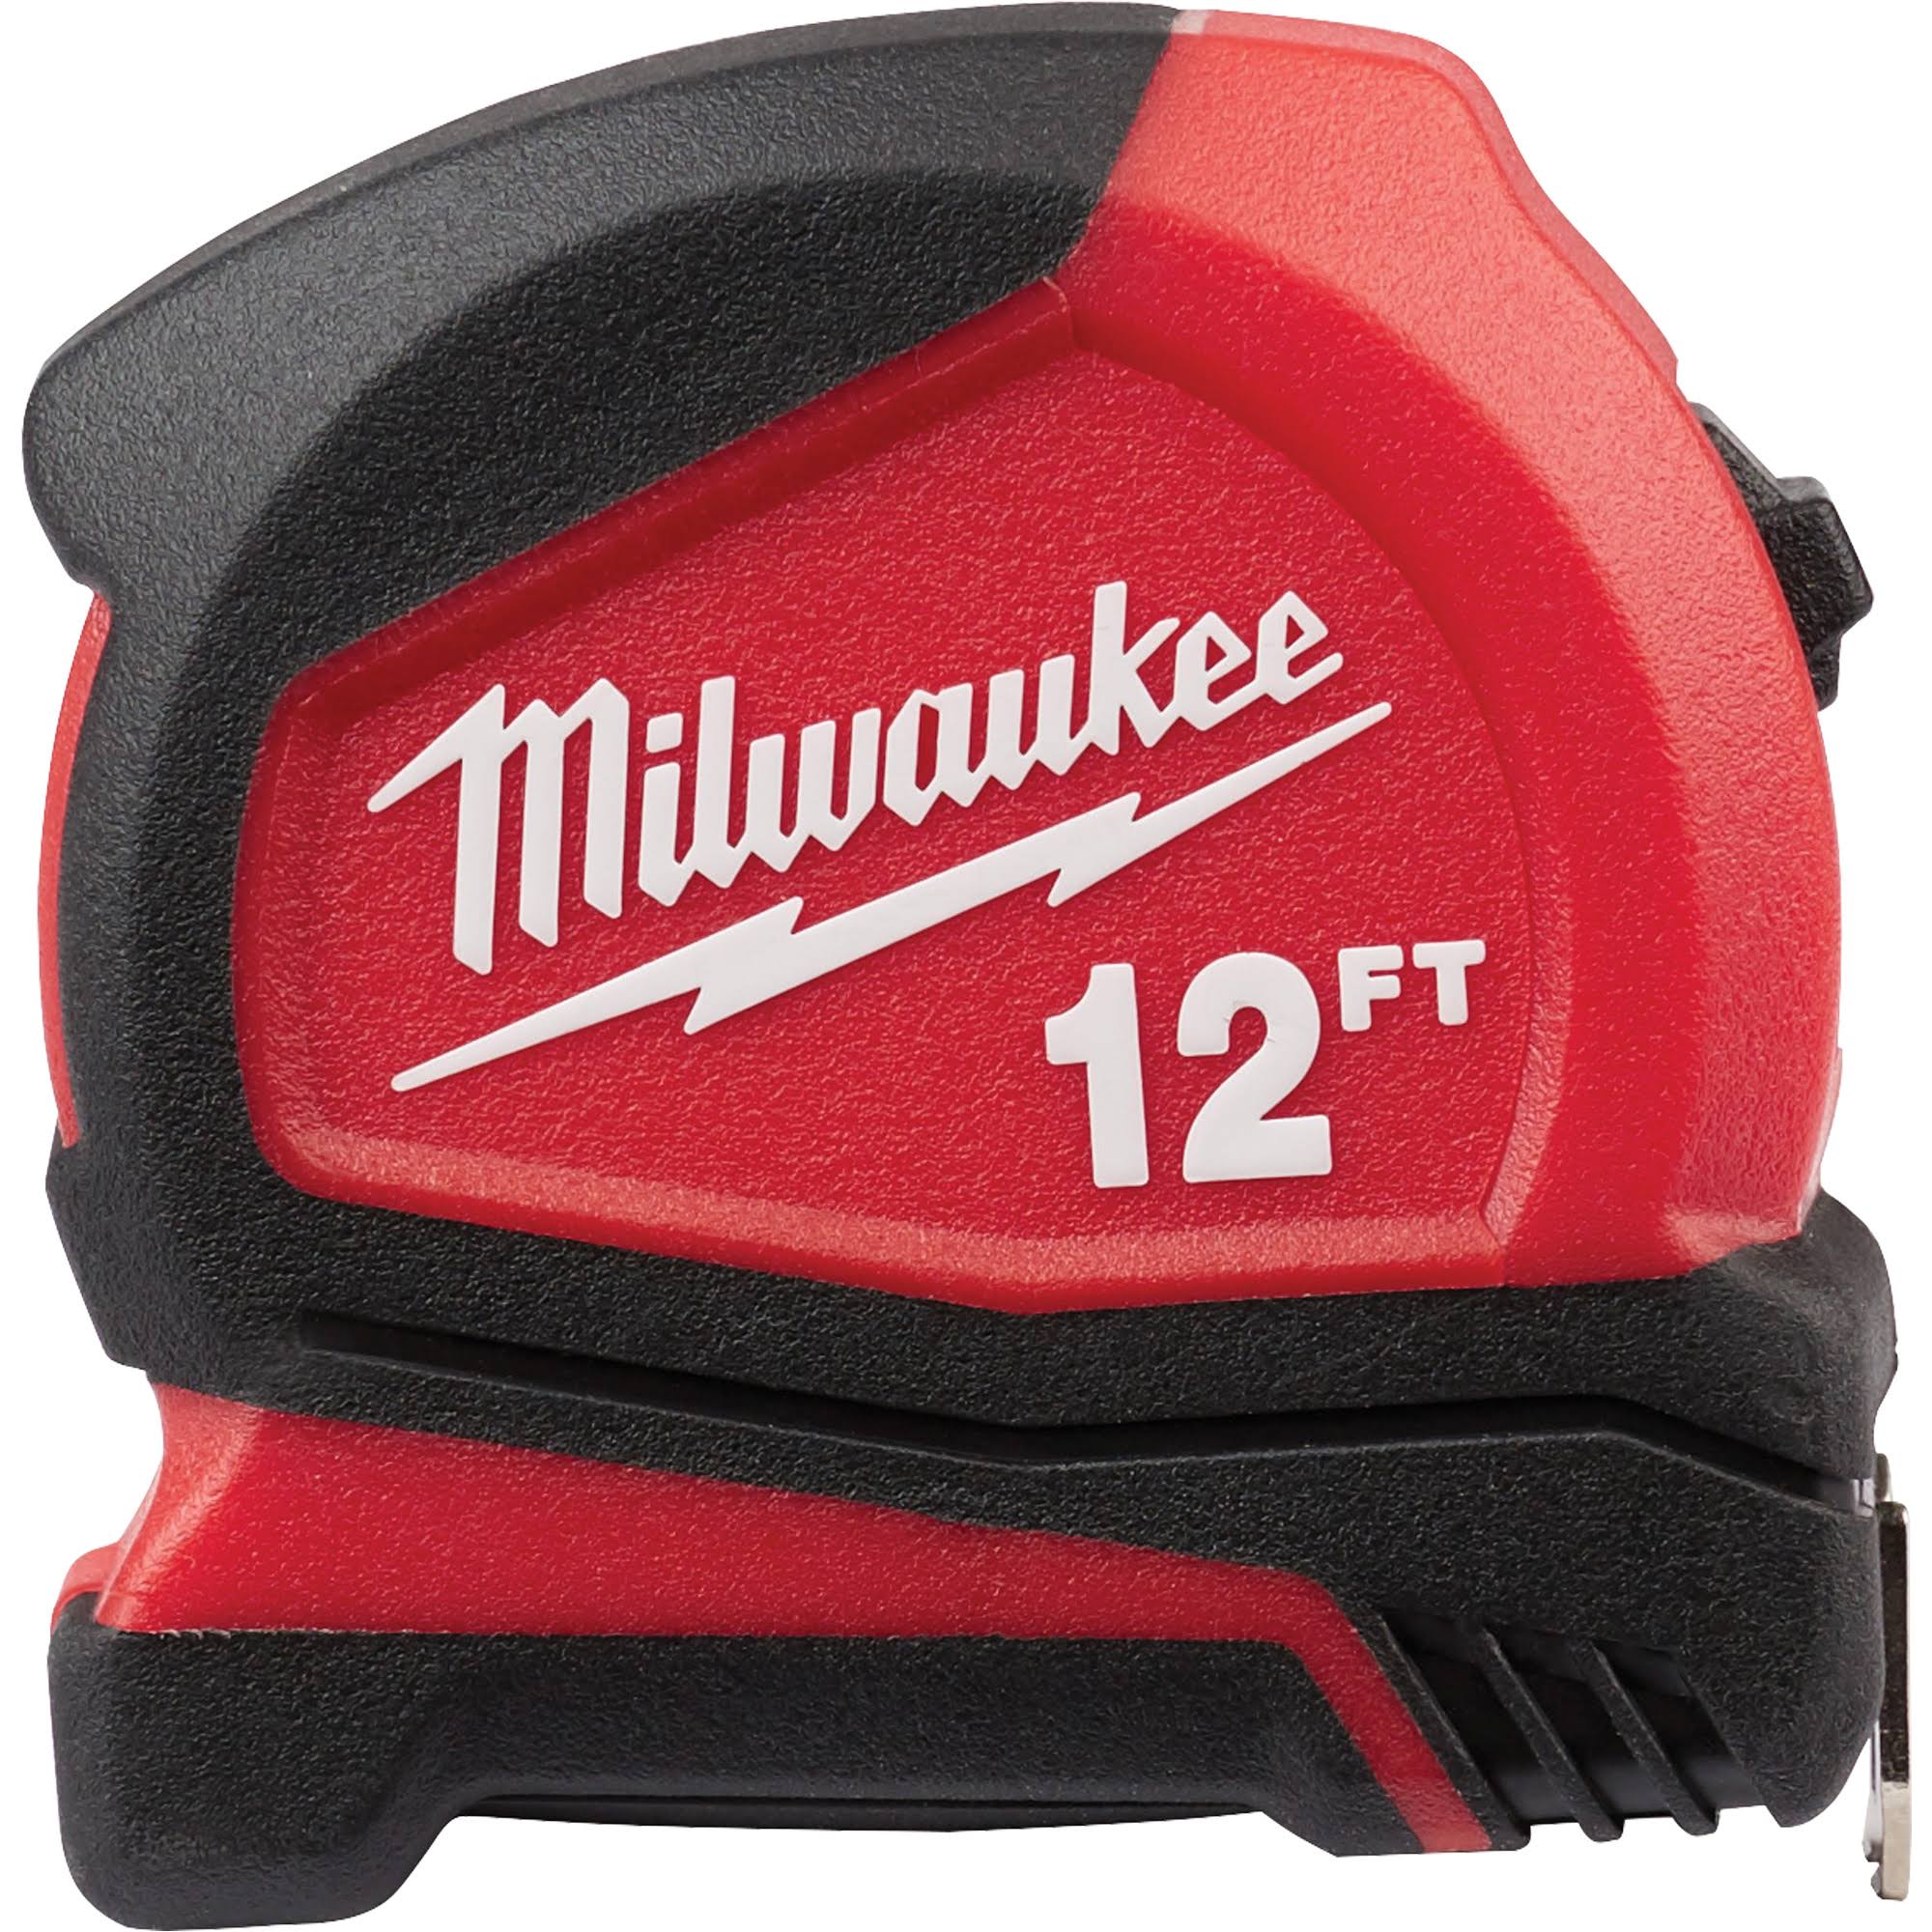 Milwaukee Compact Tape Measure - 12'